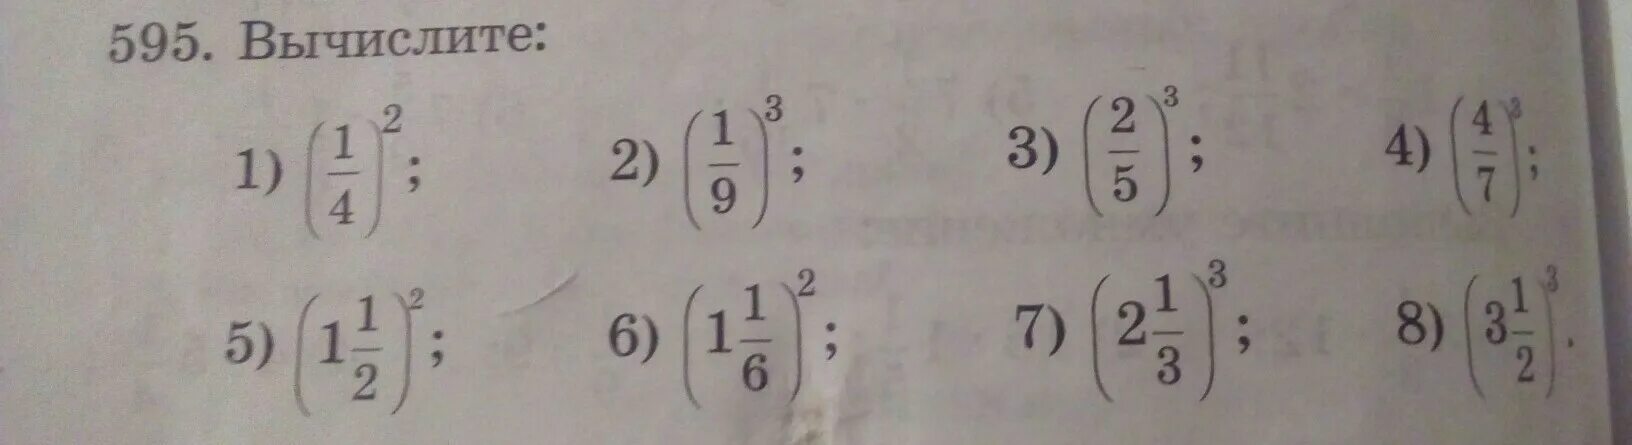 Вычислить 1 3 90 1 5. Вычислить 1-1/2. Вычислите (1 1 3). Вычислите (1-2). Вычислите 1,1^4.